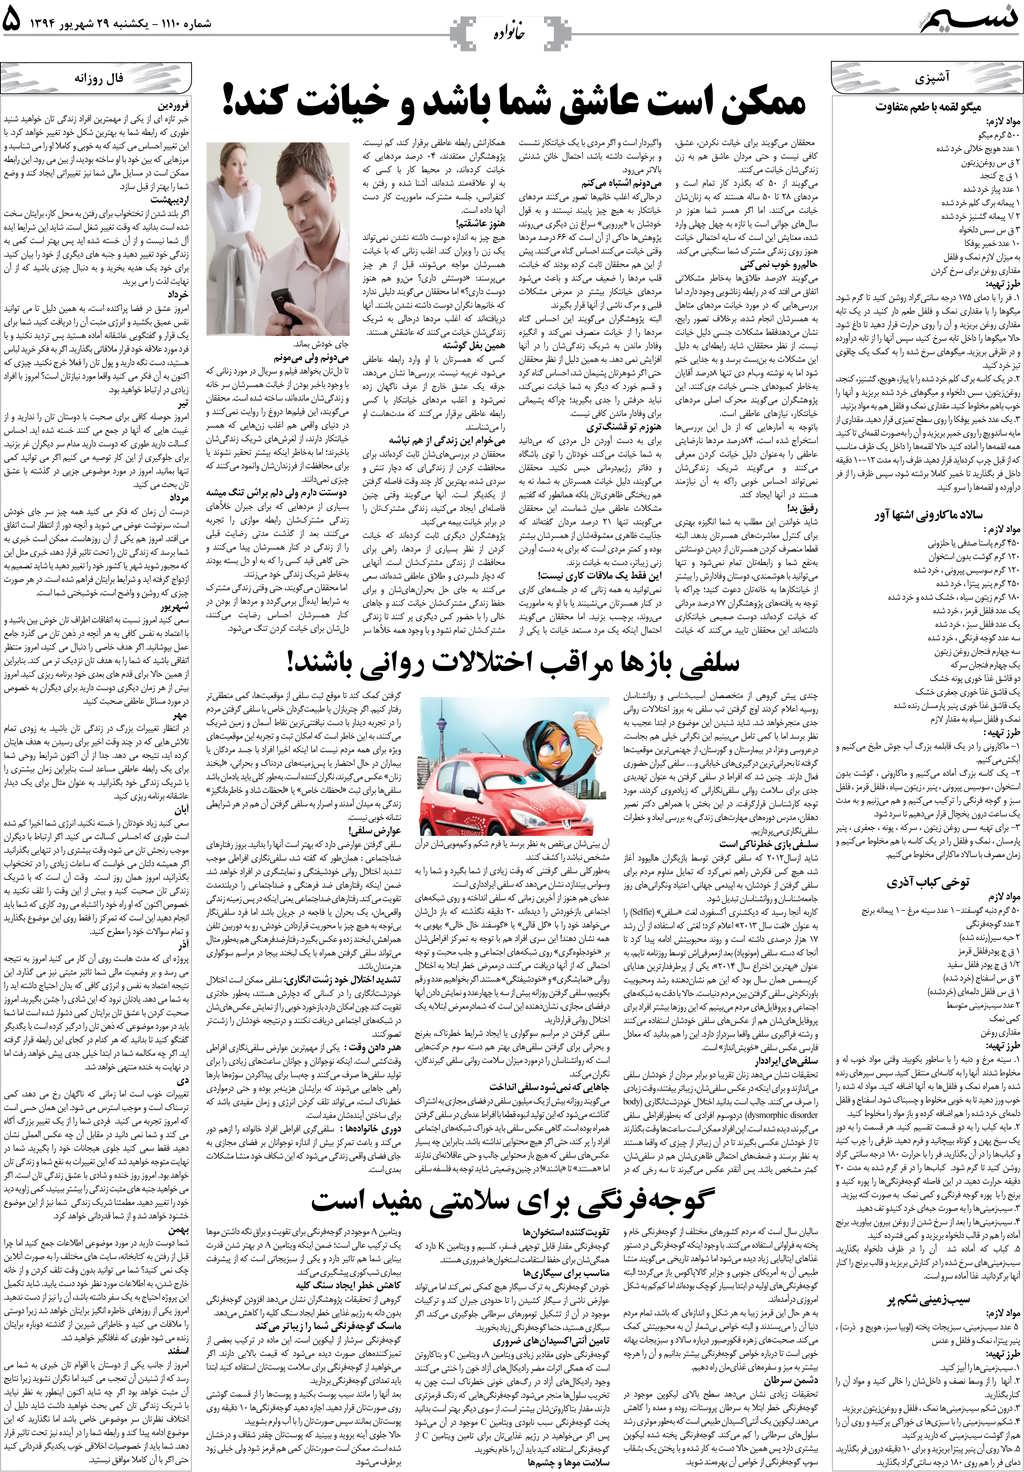 صفحه خانواده روزنامه نسیم شماره 1110